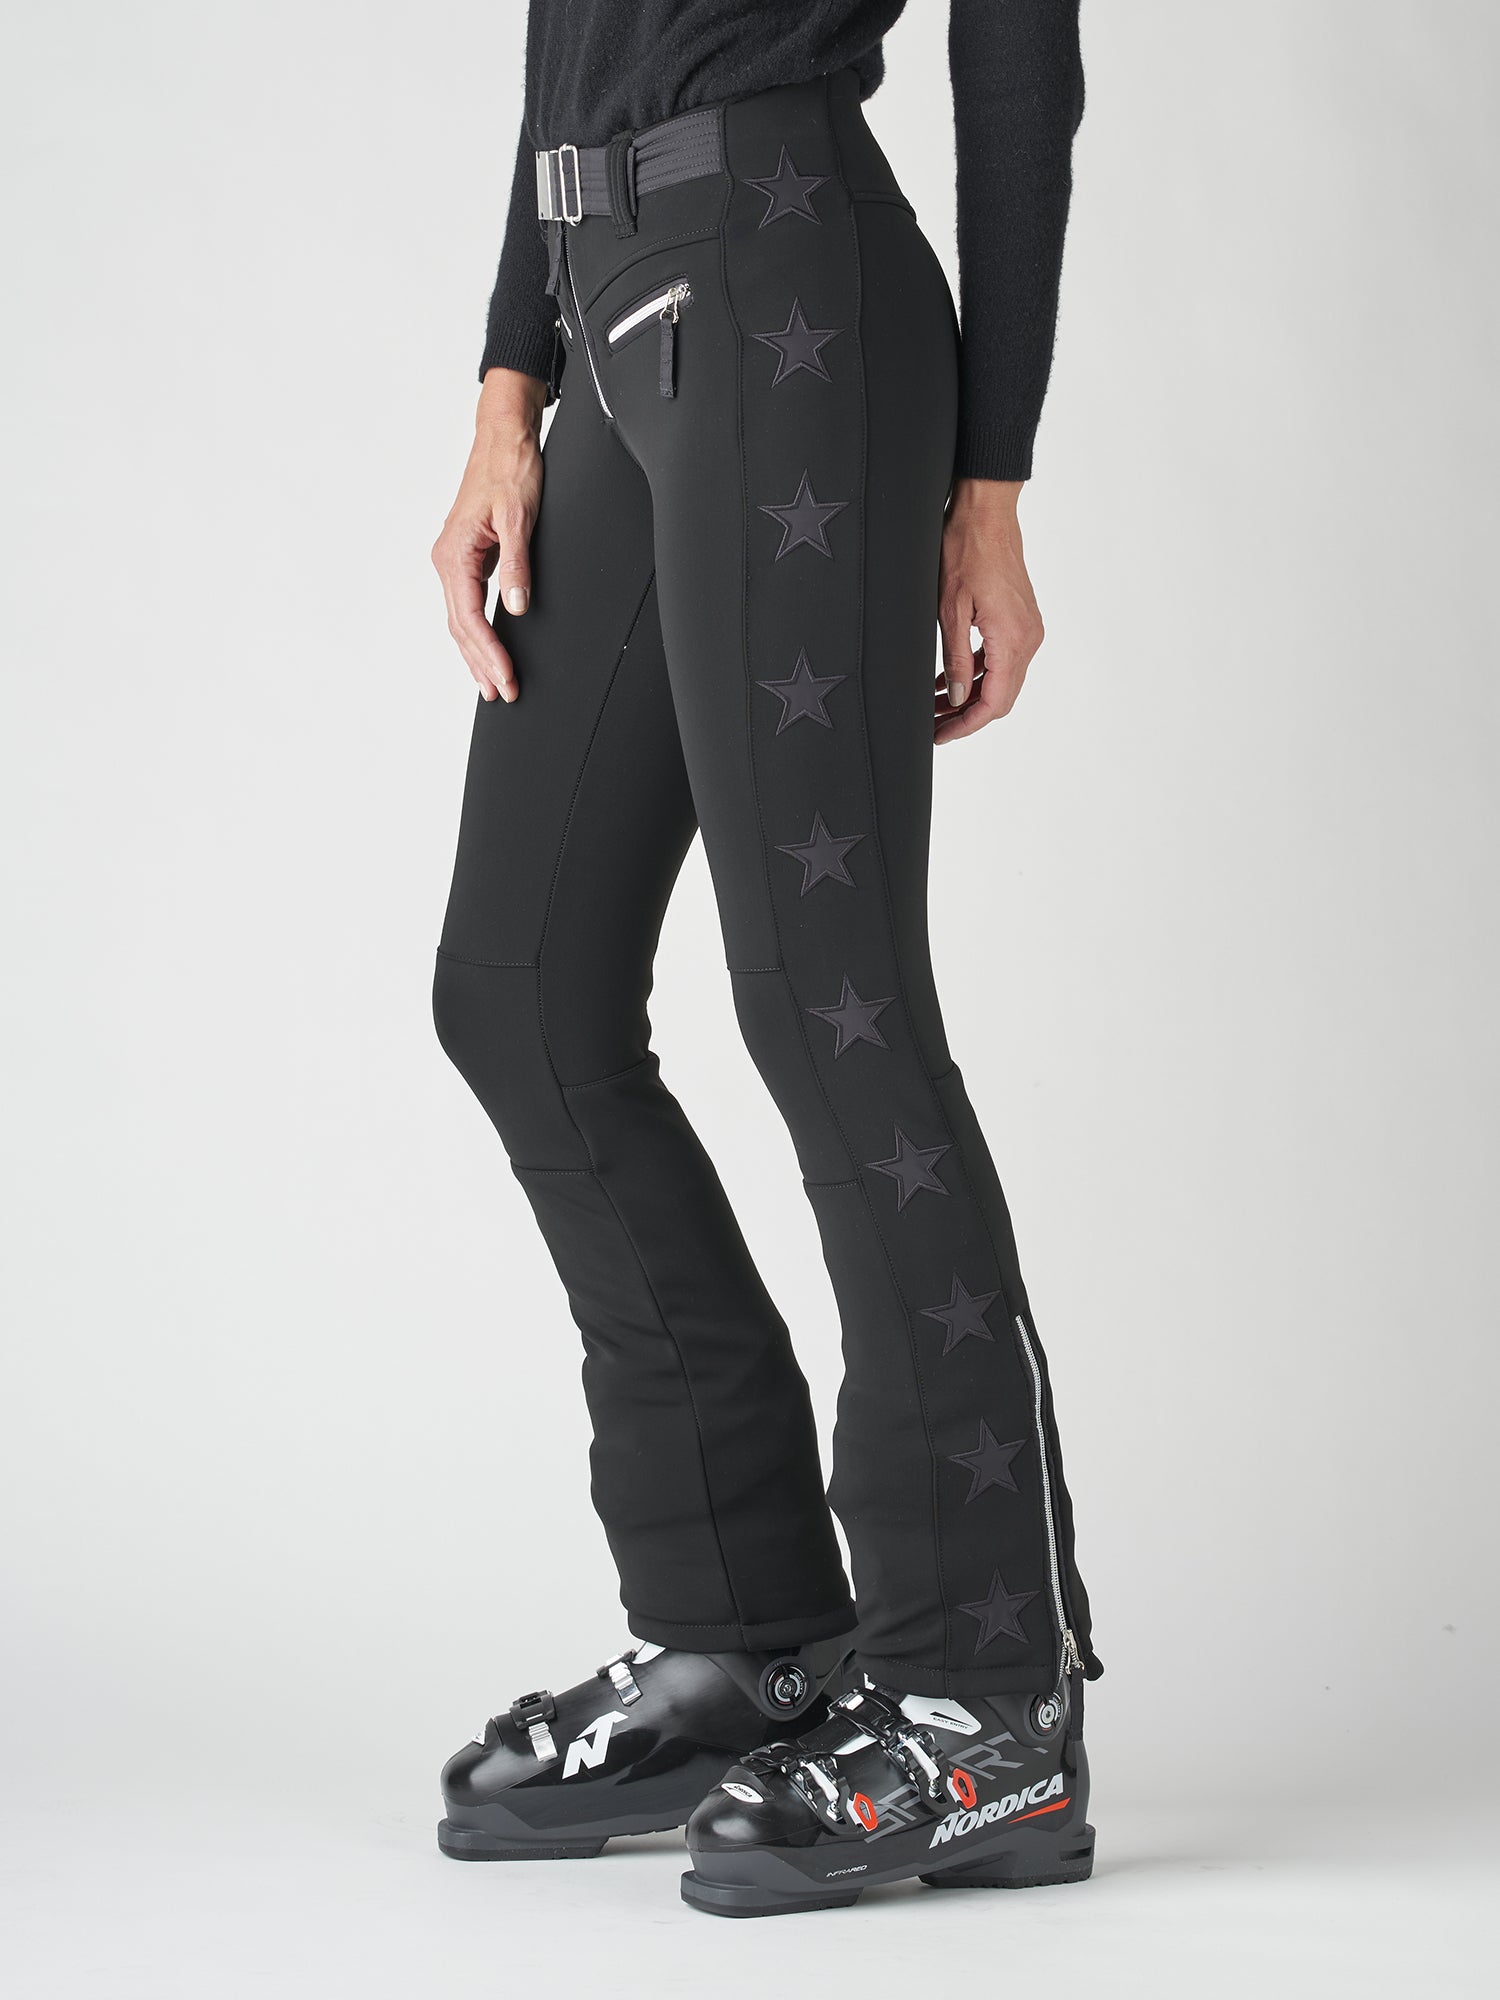 Tiby Star flared ski pants in black - Jet Set